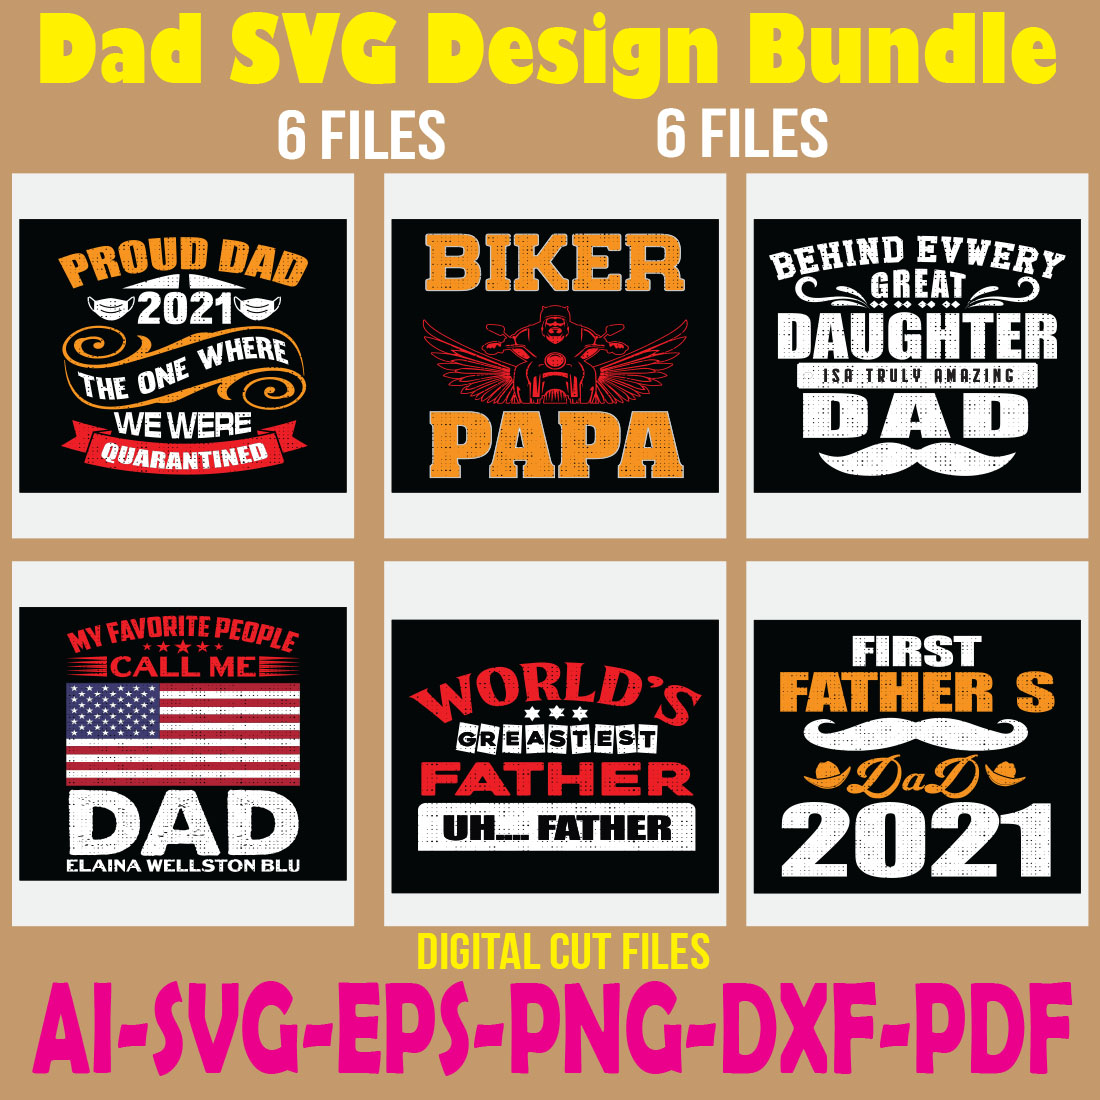 Dad SVG Design Bundle cover image.